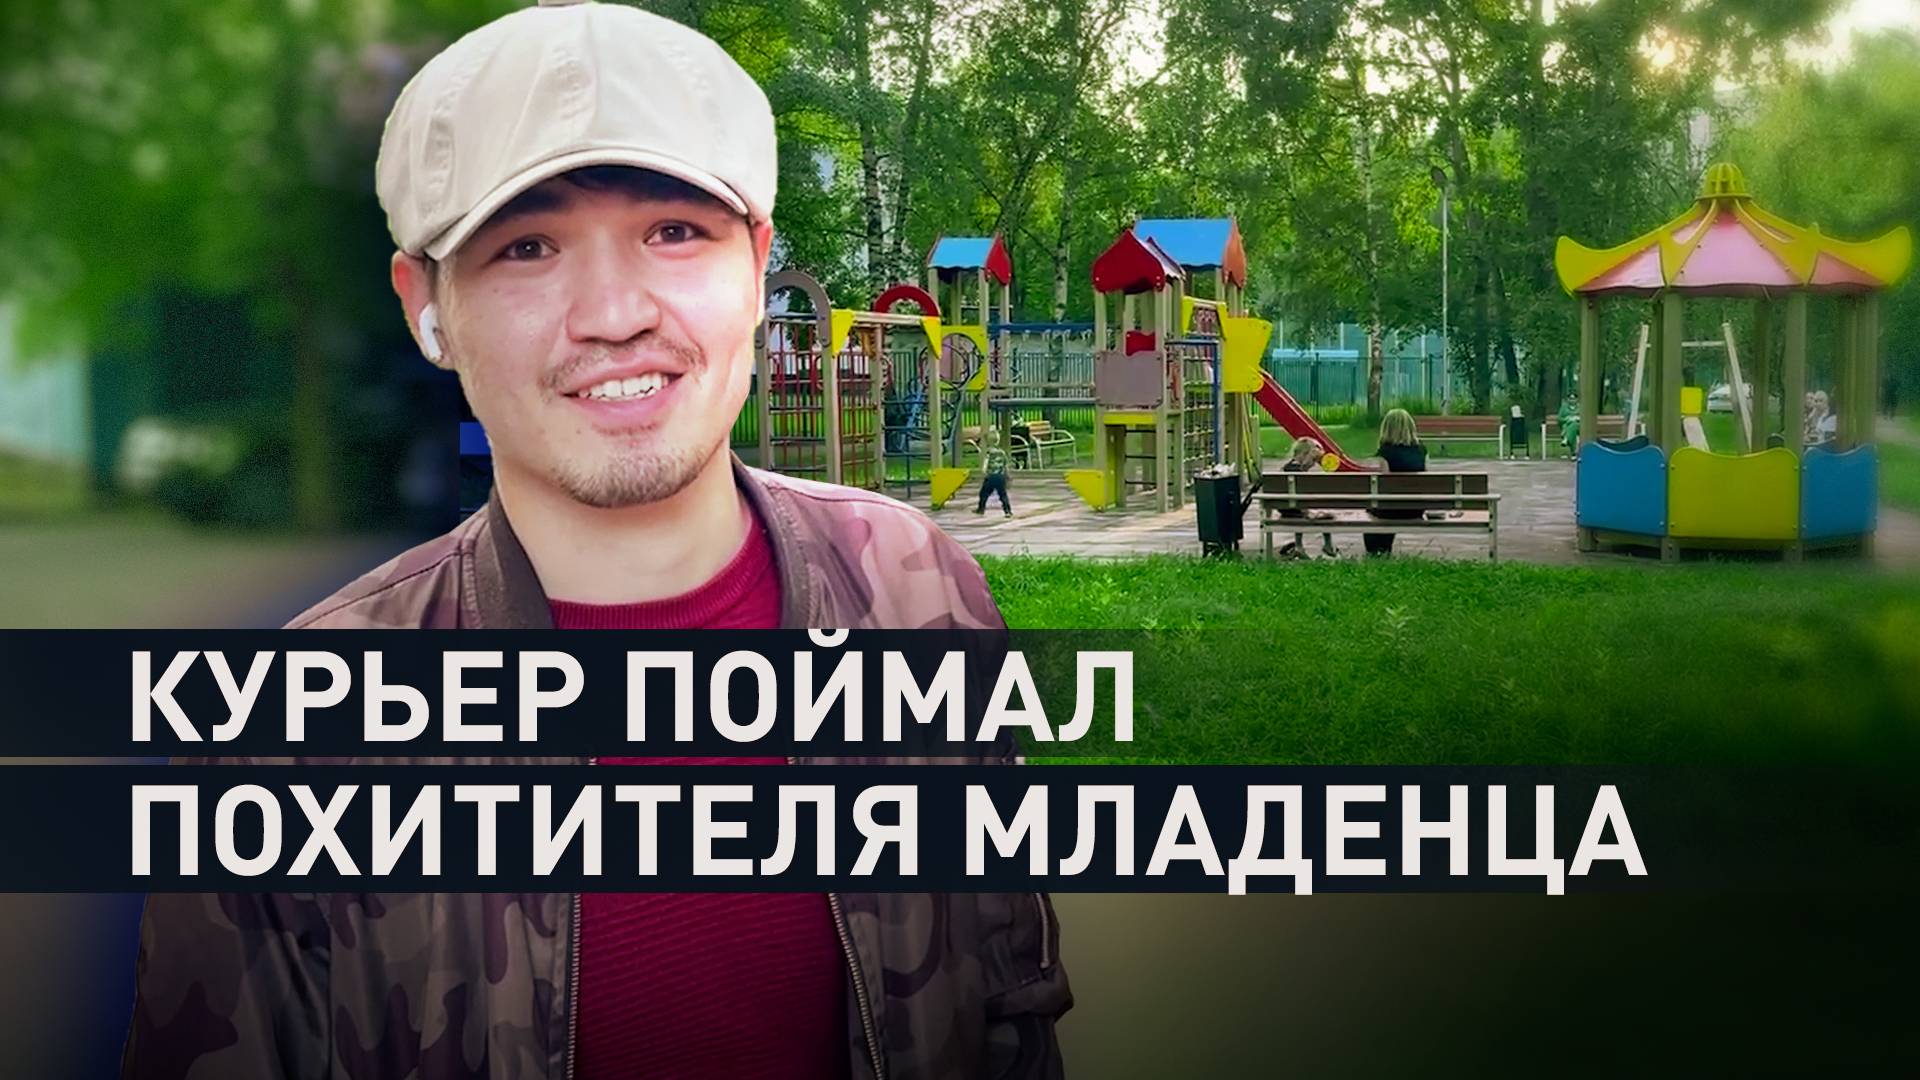 «Кто-то должен помогать»: остановивший похитителя ребёнка в Москве курьер рассказал о произошедшем